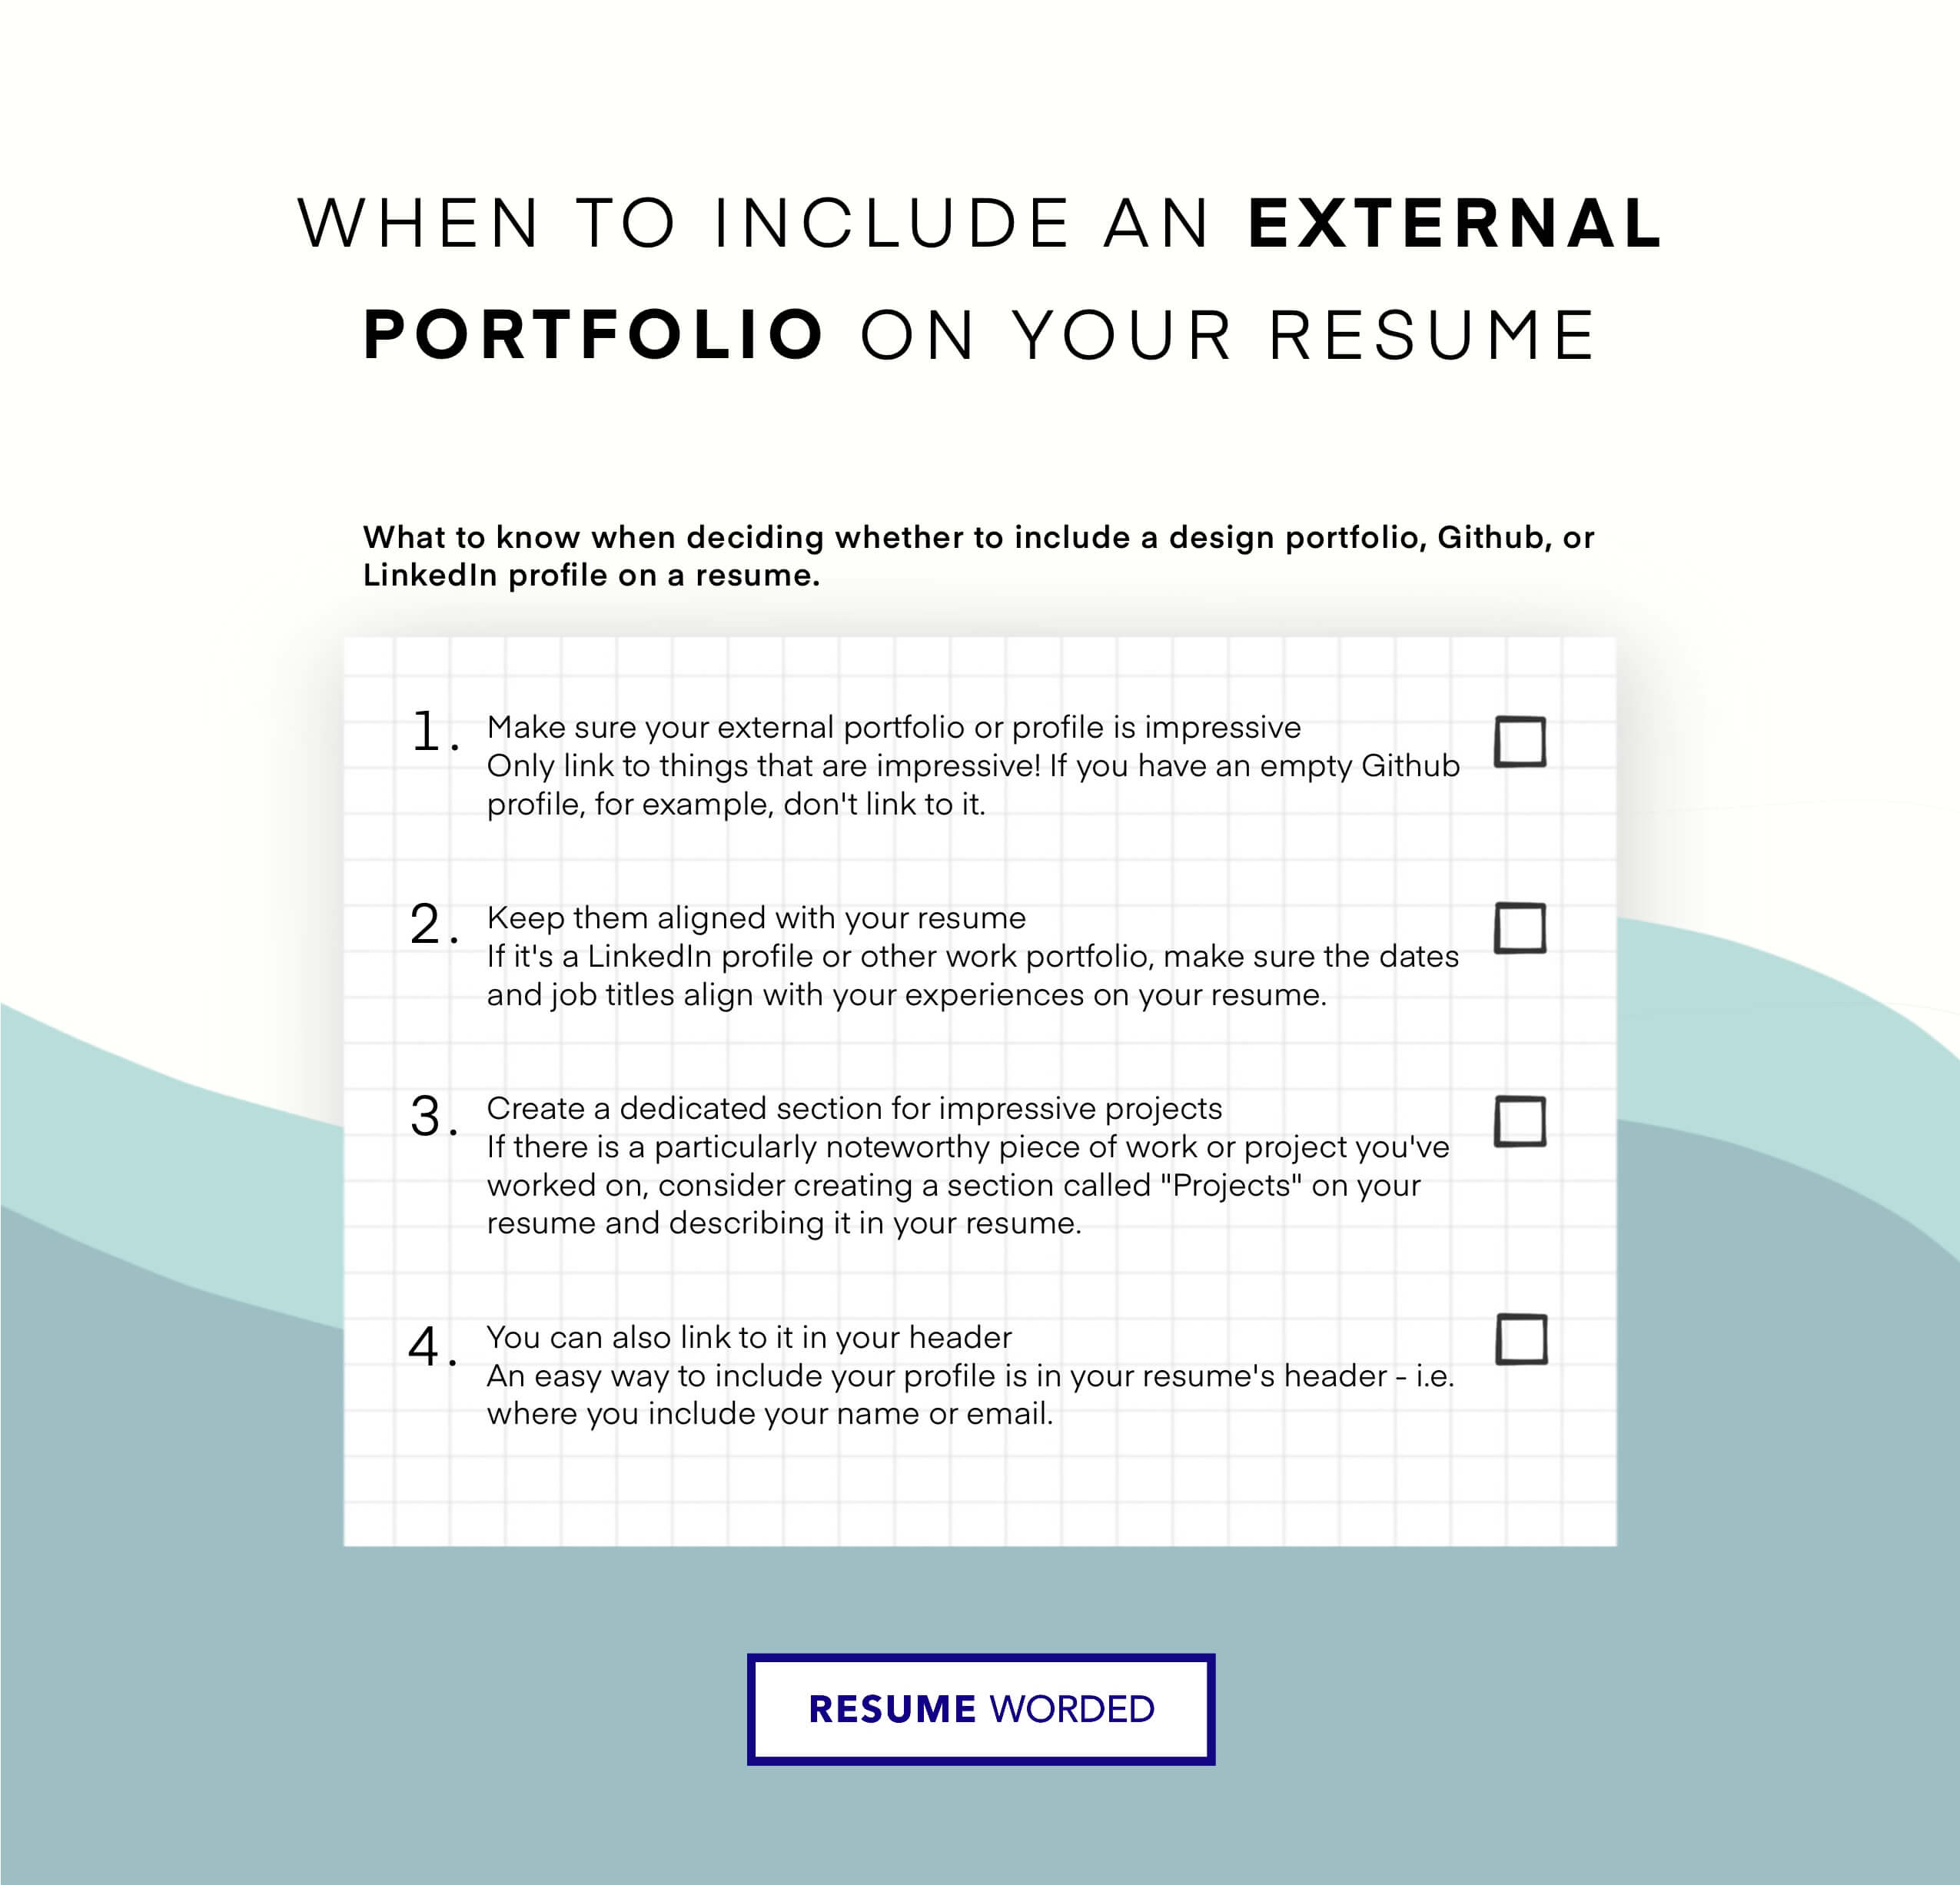 Showcase your portfolio - Video Game Designer Resume